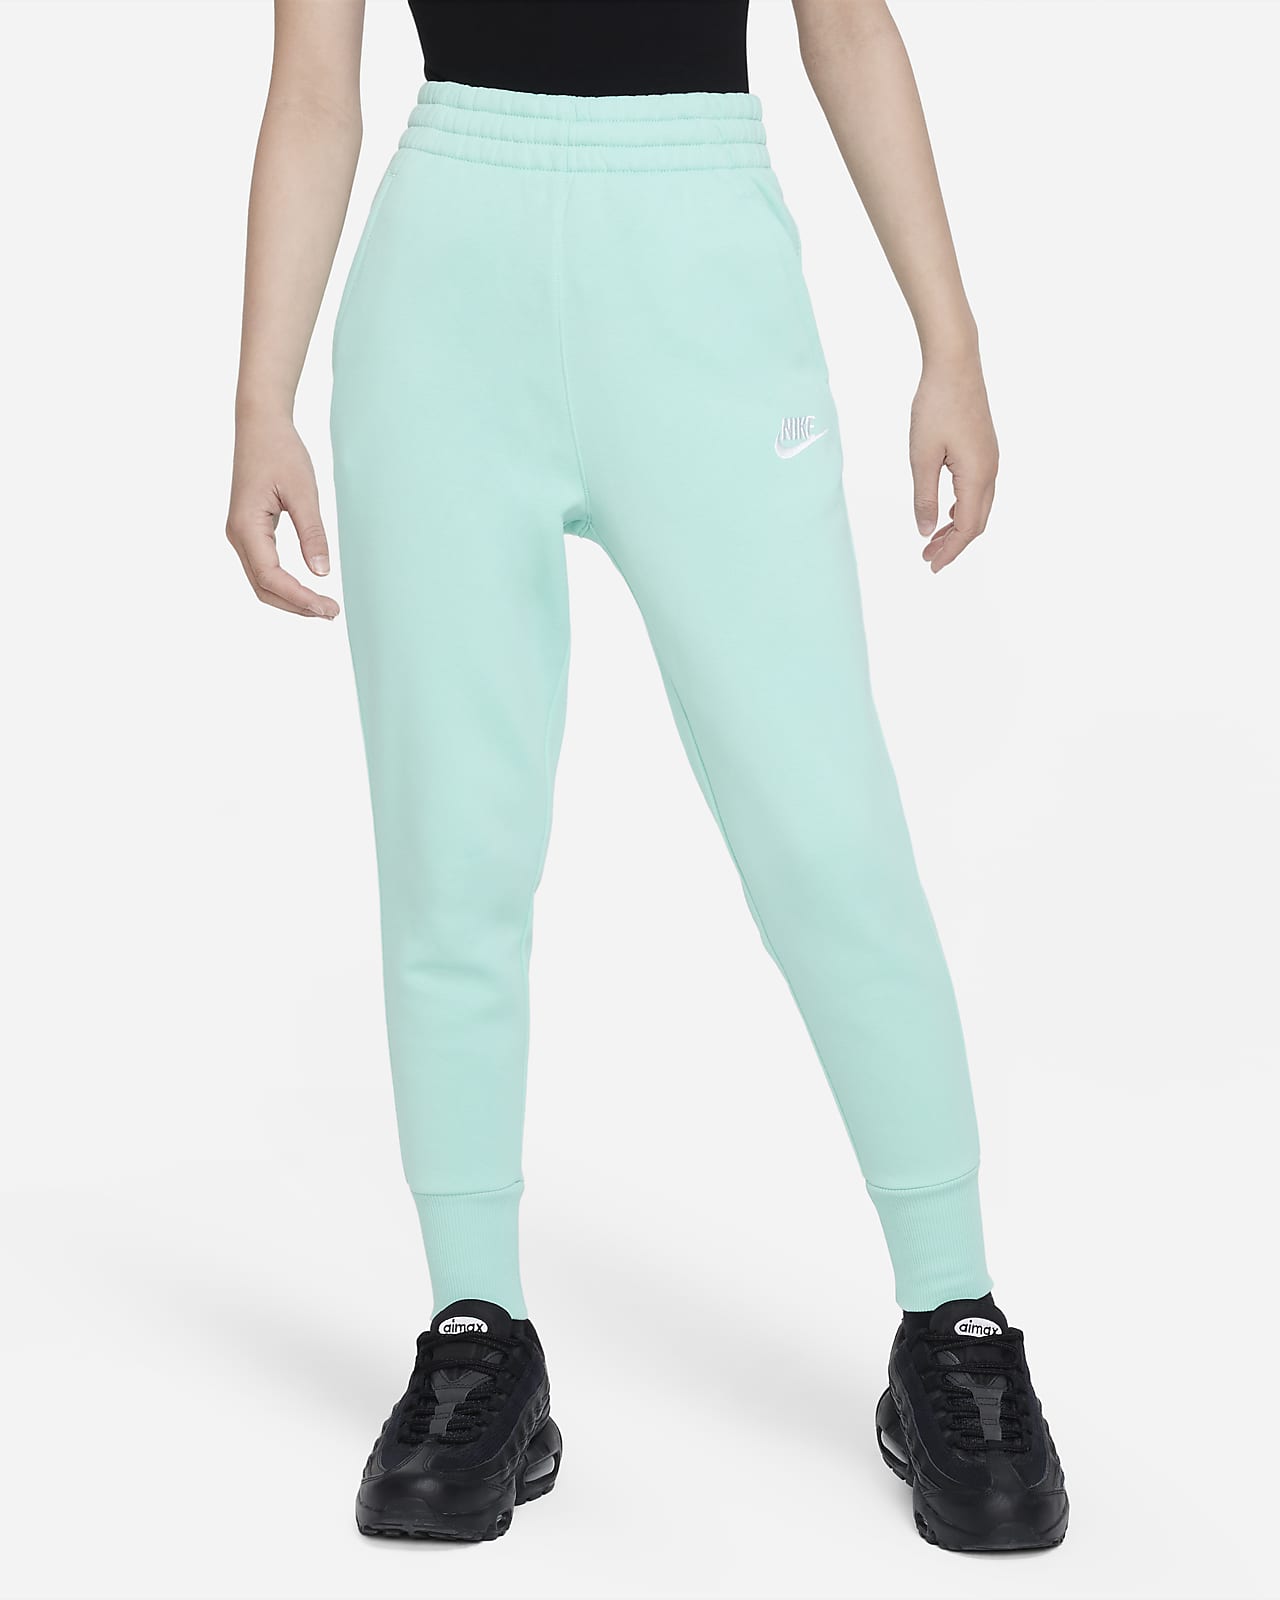 Nike Sportswear Junior Girls Trend Fleece Pants  Olive Grey  JD Sports  Canada